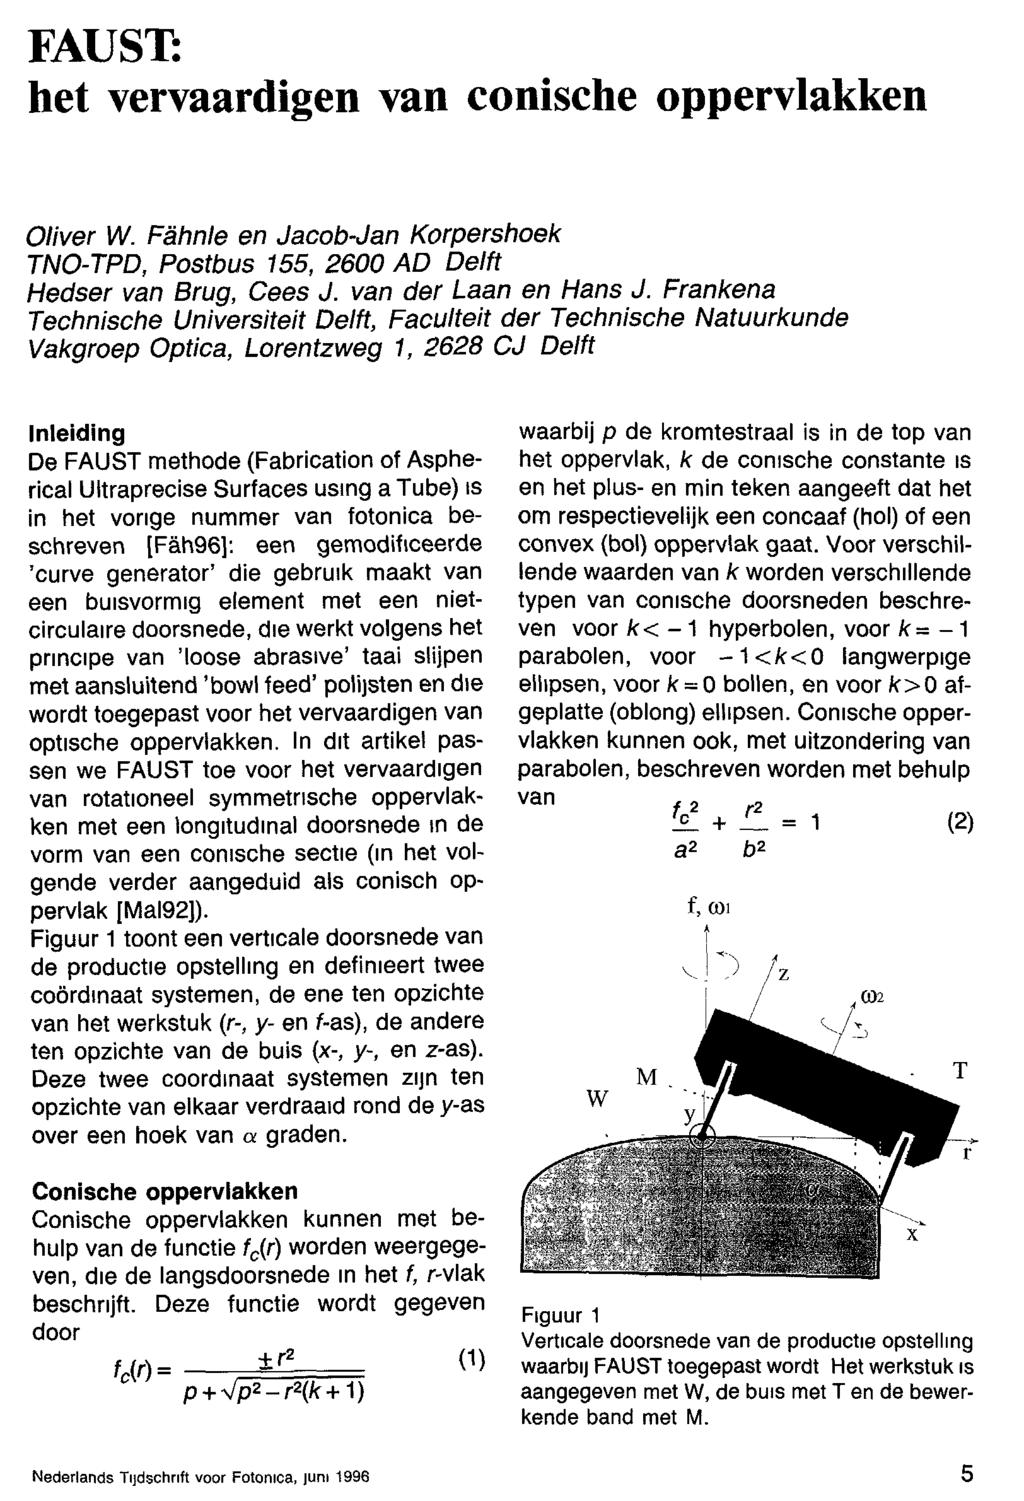 FAUST: het vervaardigen van conische oppervlakken Oliver W. Fähnle en Jacob-Jan Korpershoek TNO-TPD, Postbus 155, 2600 AD Delft Hedser van Brug, Cees J. van der Laan en Hans J.